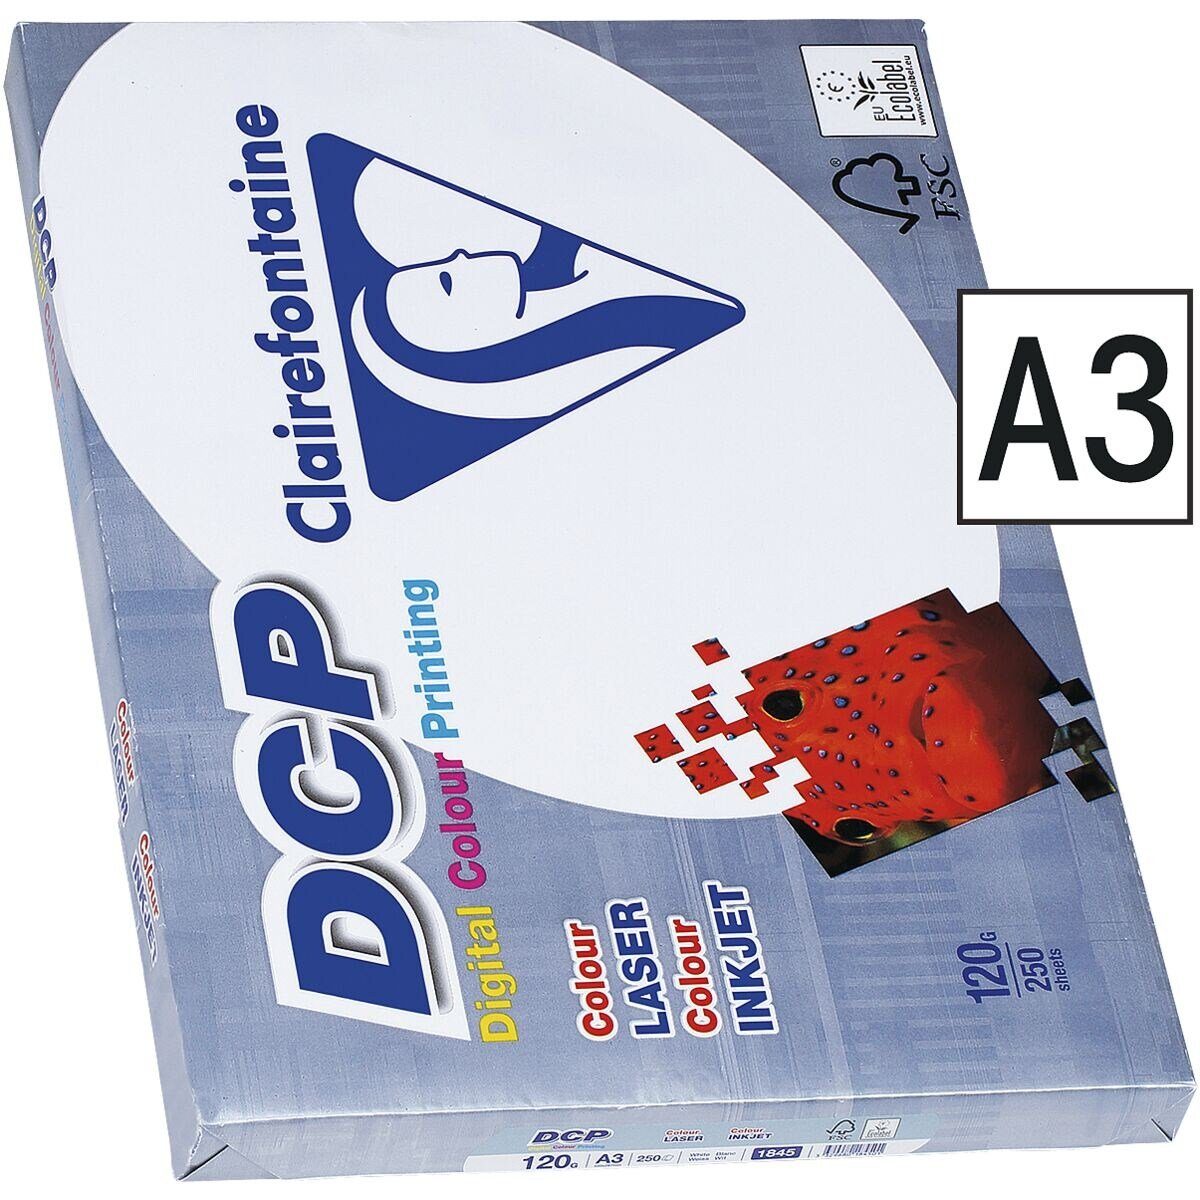 DCP, 172 CIE, Farblaser-Druckerpapier A3, 250 120 DIN Blatt CLAIREFONTAINE g/m², Format